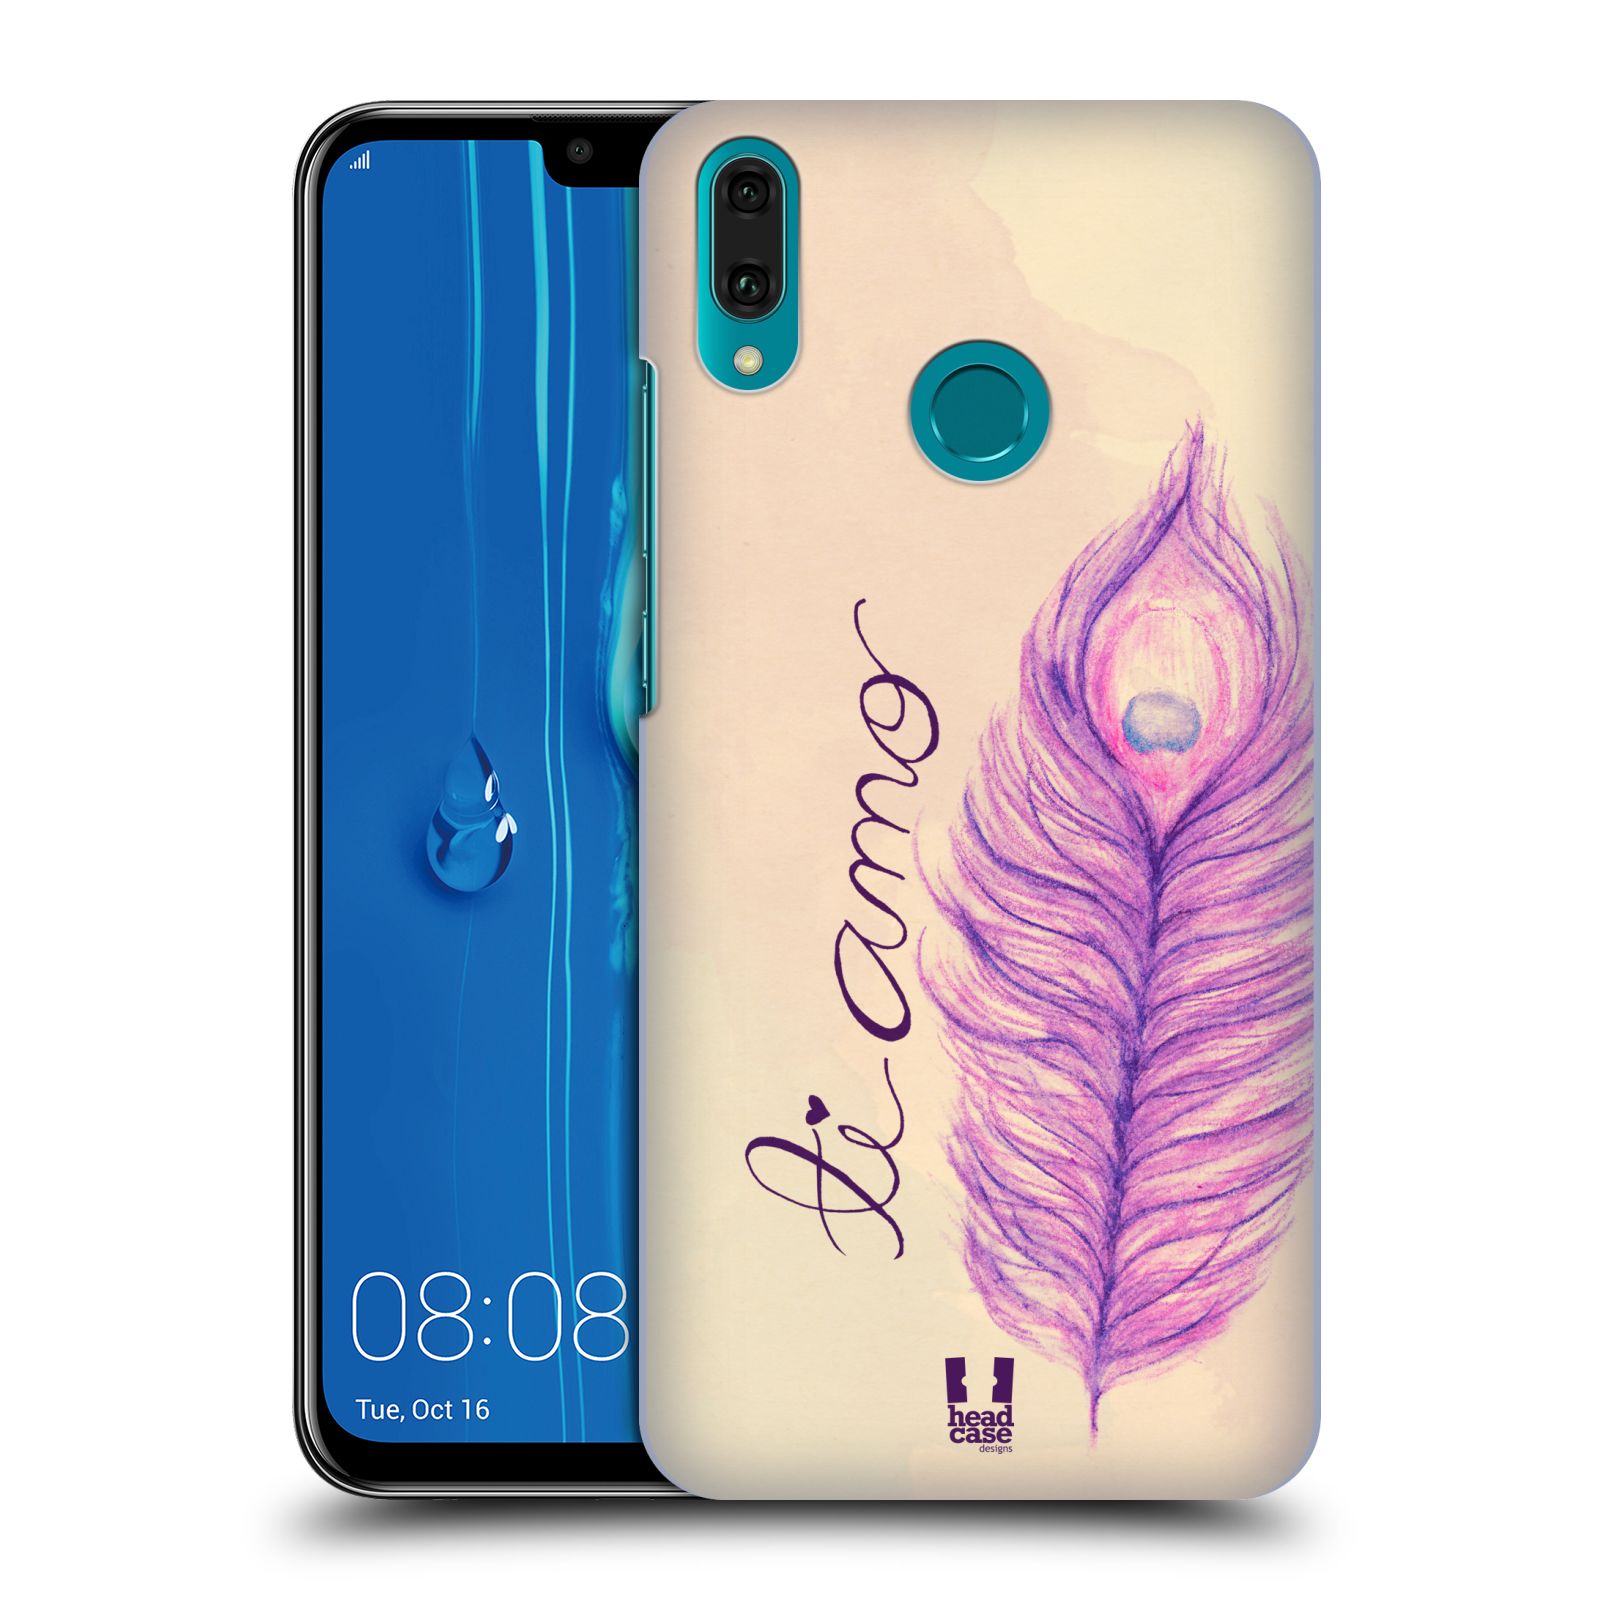 Pouzdro na mobil Huawei Y9 2019 - HEAD CASE - vzor Paví pírka barevná FIALOVÁ TI AMO